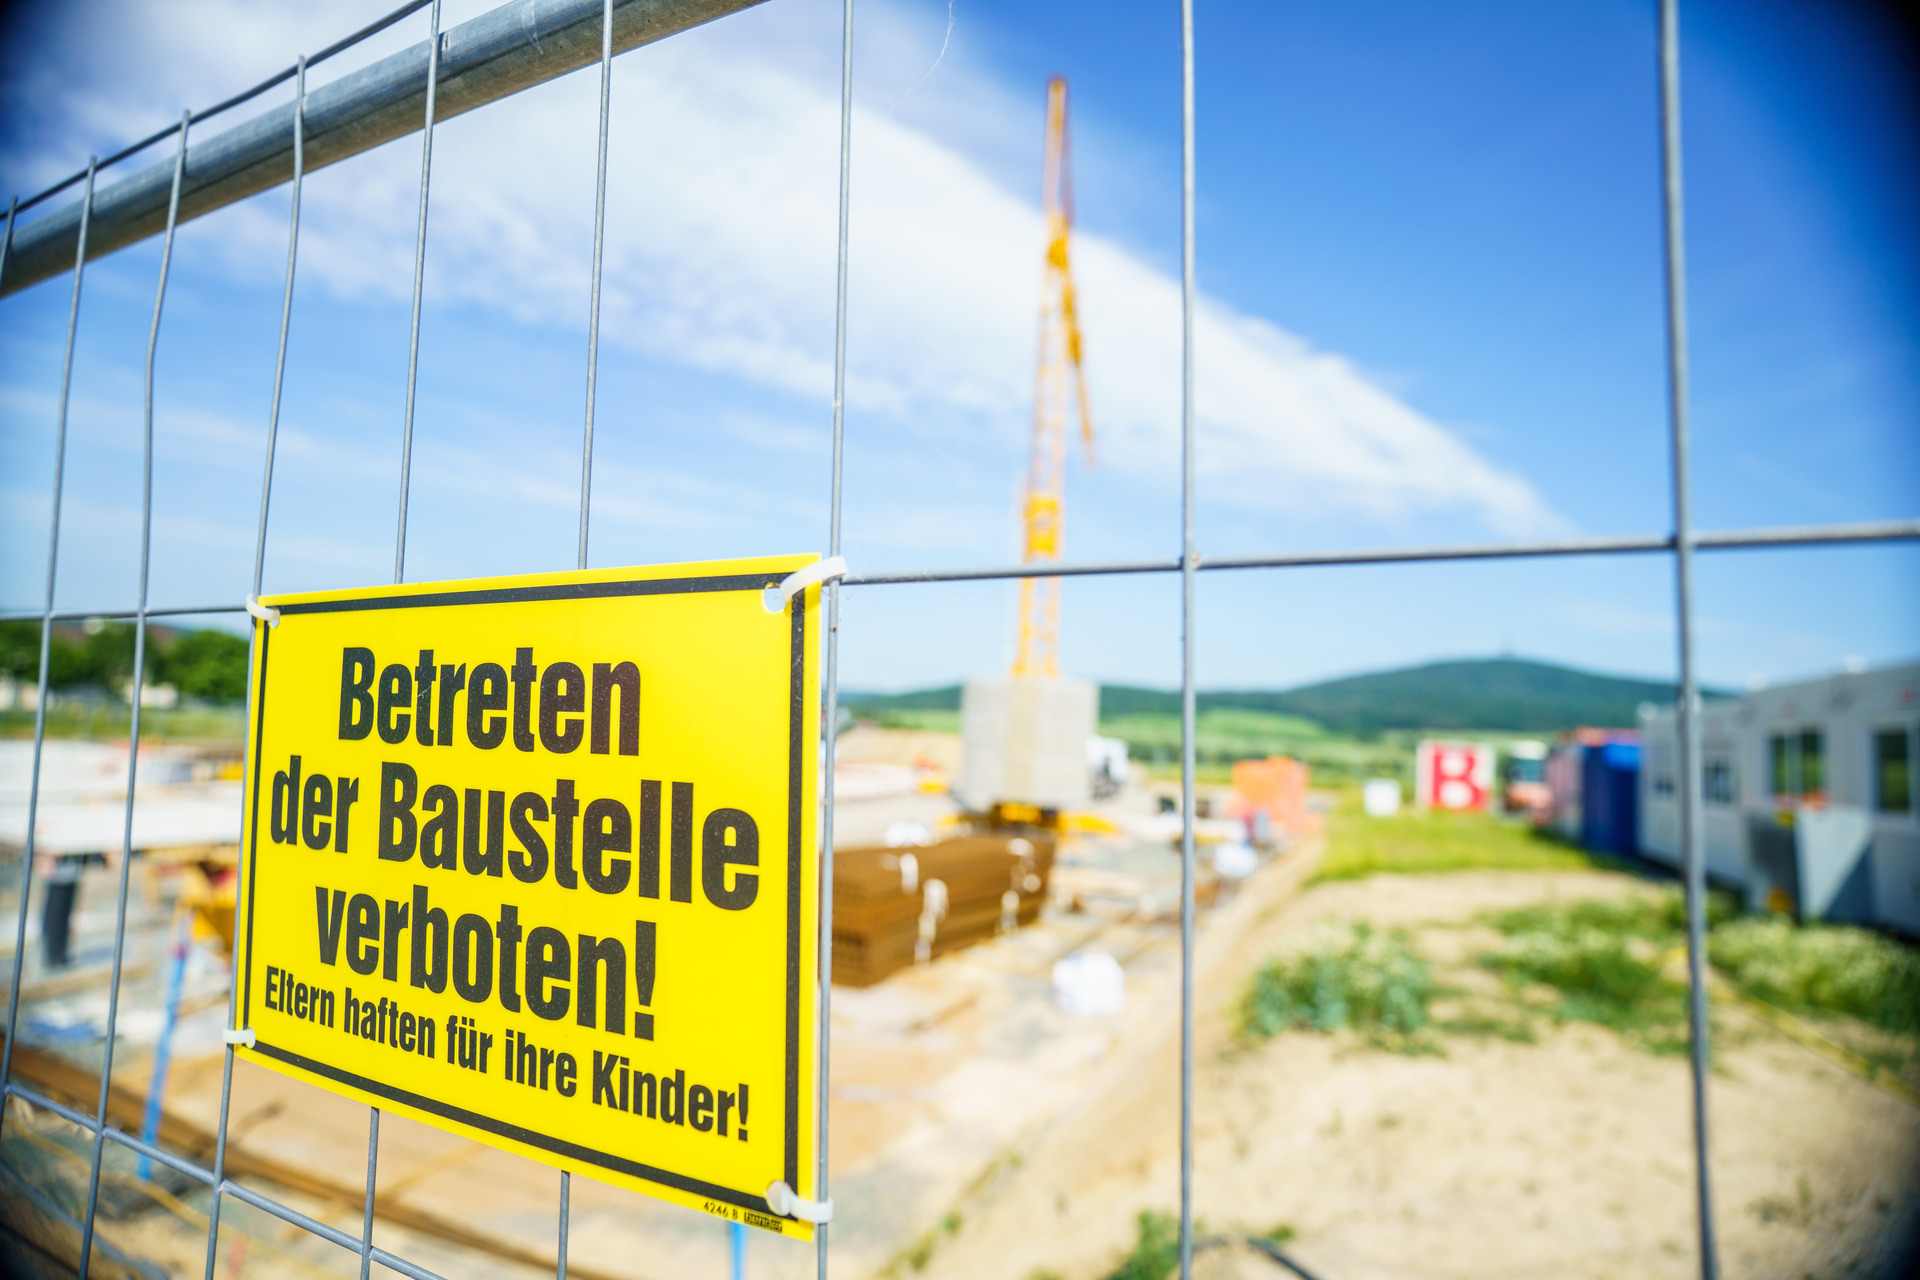 Gelände einer Baustelle mit gelbem Schild am Zaun: Betreten der Baustelle verboten! Eltern haften für ihre Kinder!